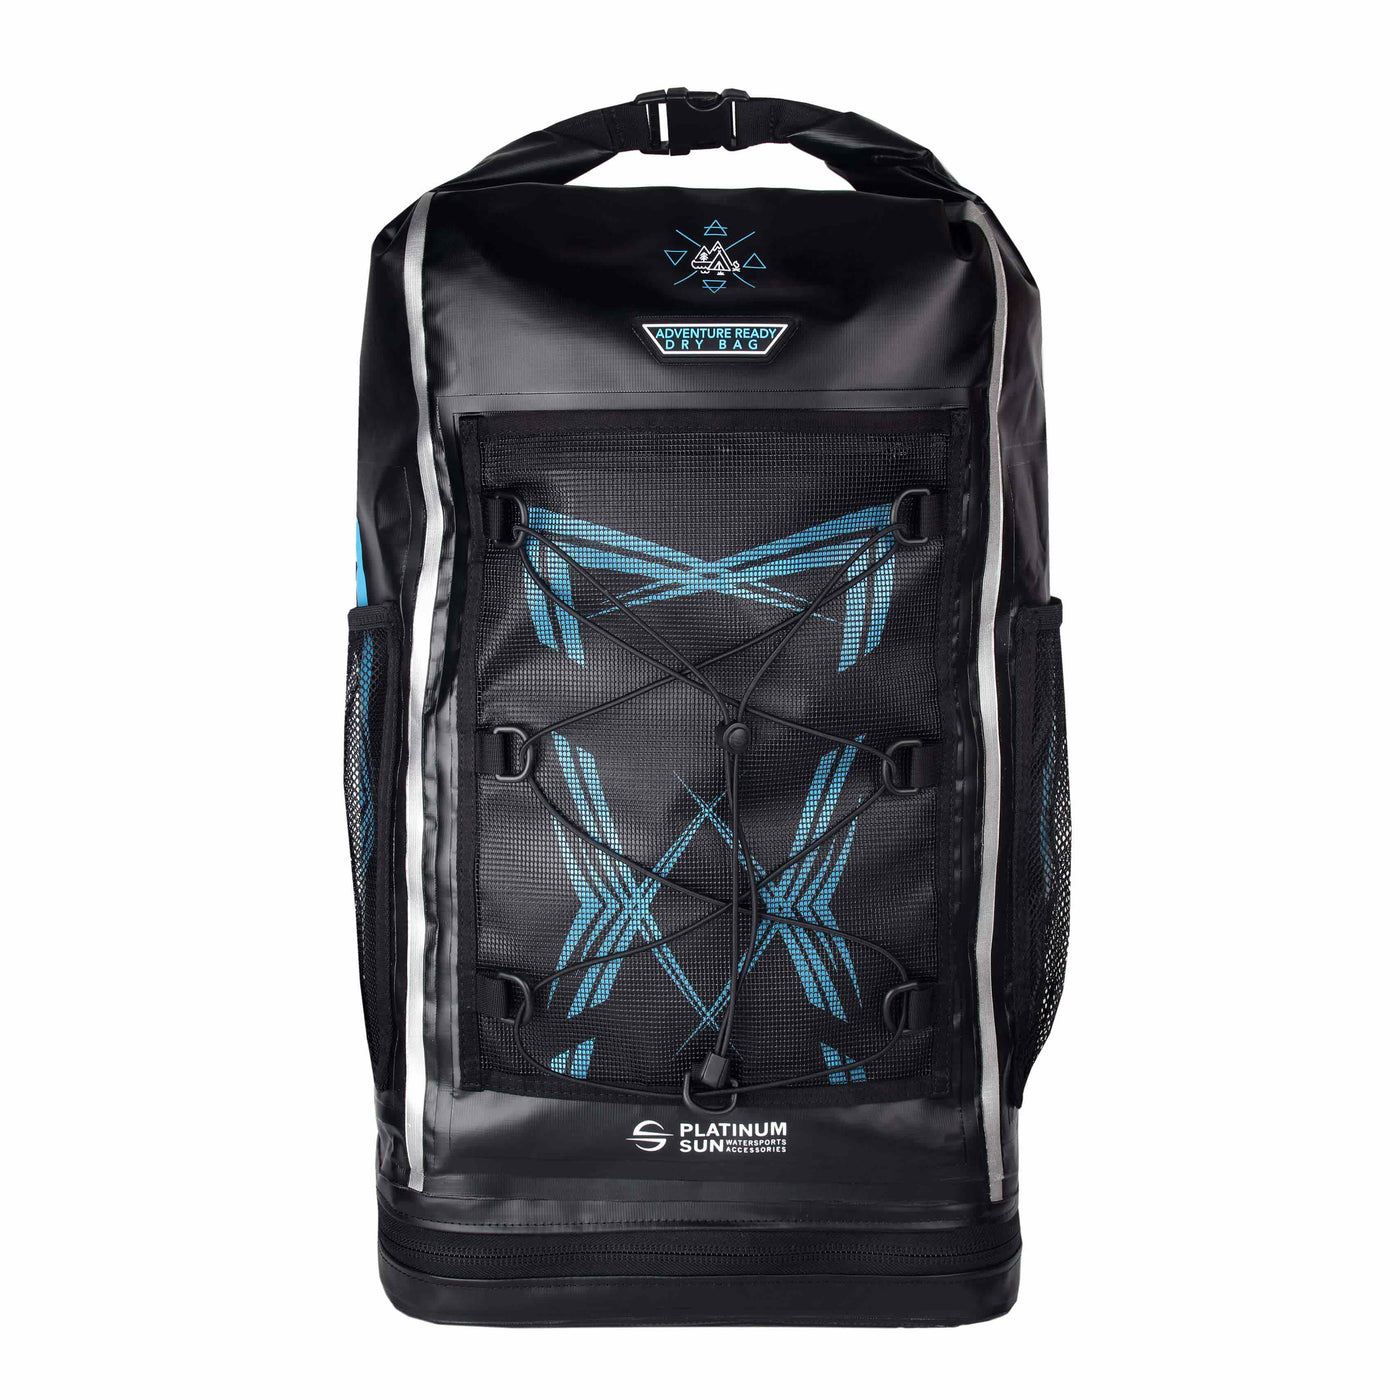 waterproof dry bag backpack 30L